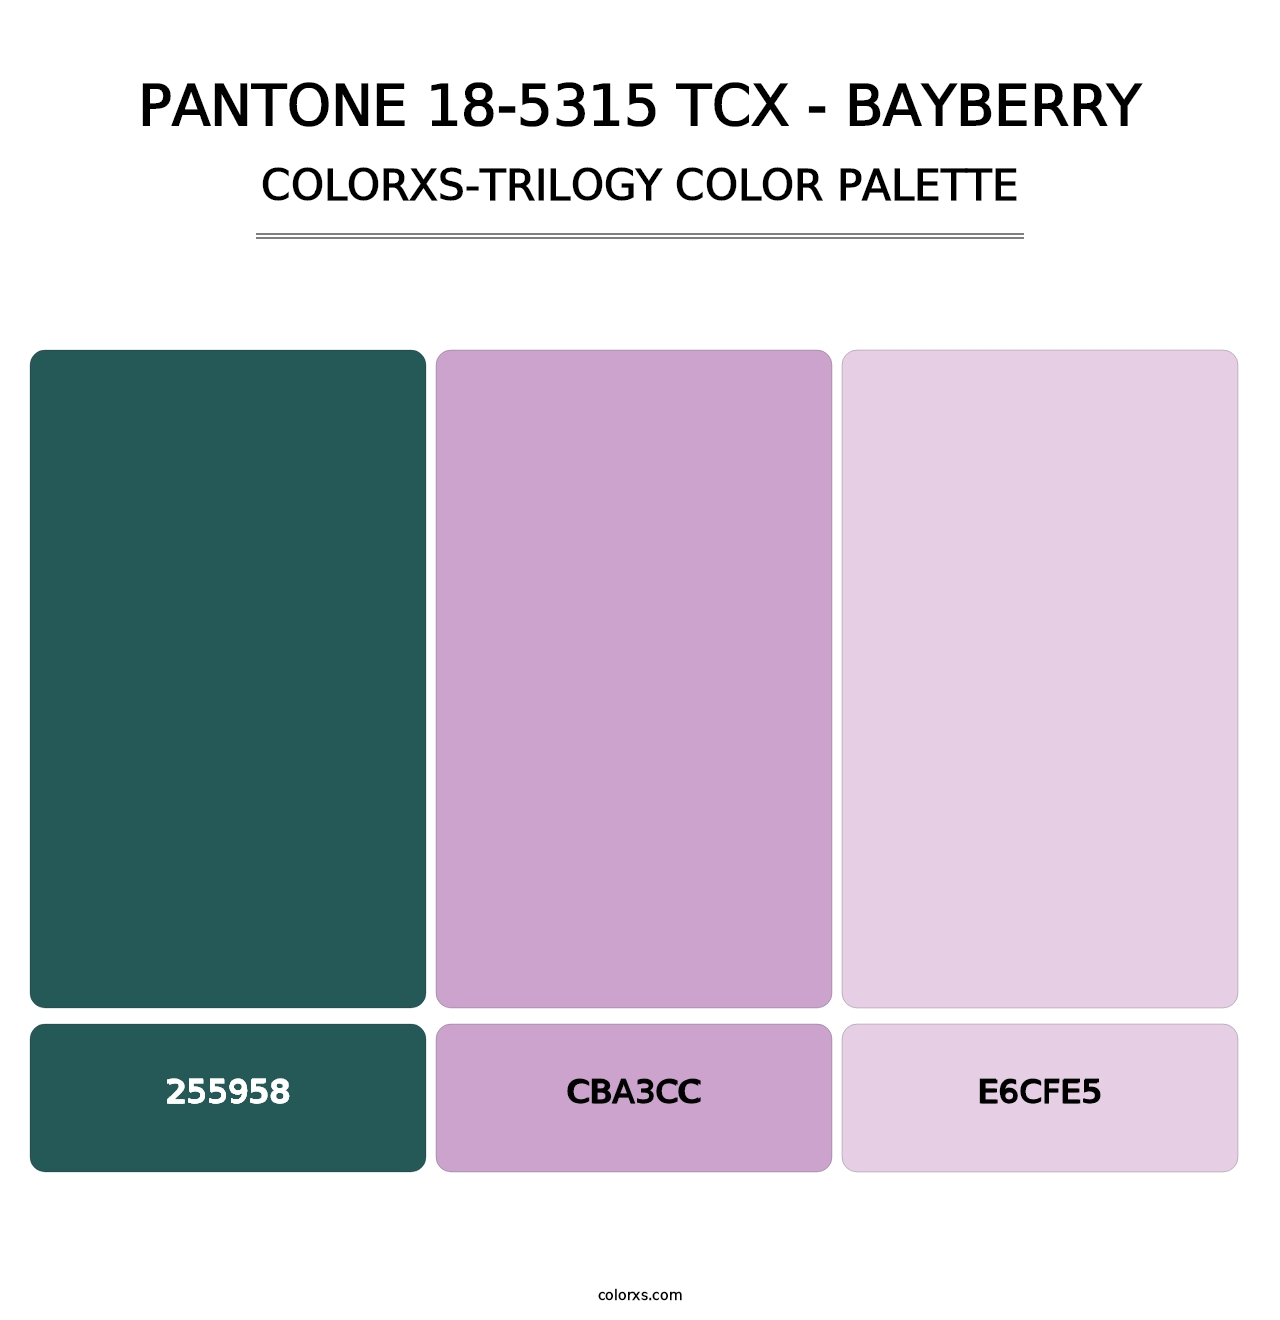 PANTONE 18-5315 TCX - Bayberry - Colorxs Trilogy Palette